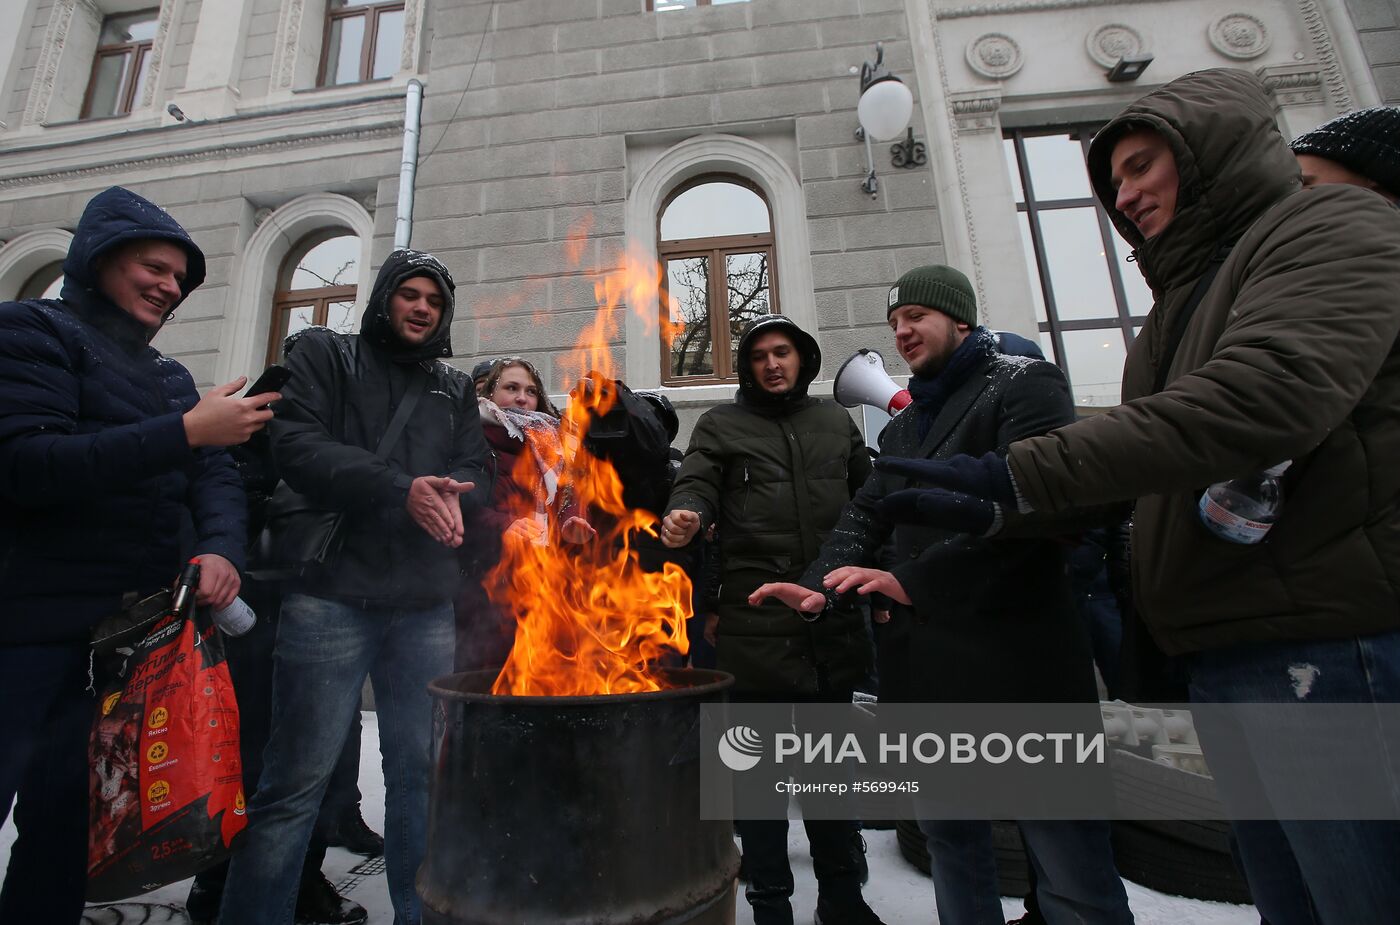 Акции с требованием включить отопление в городах Украины